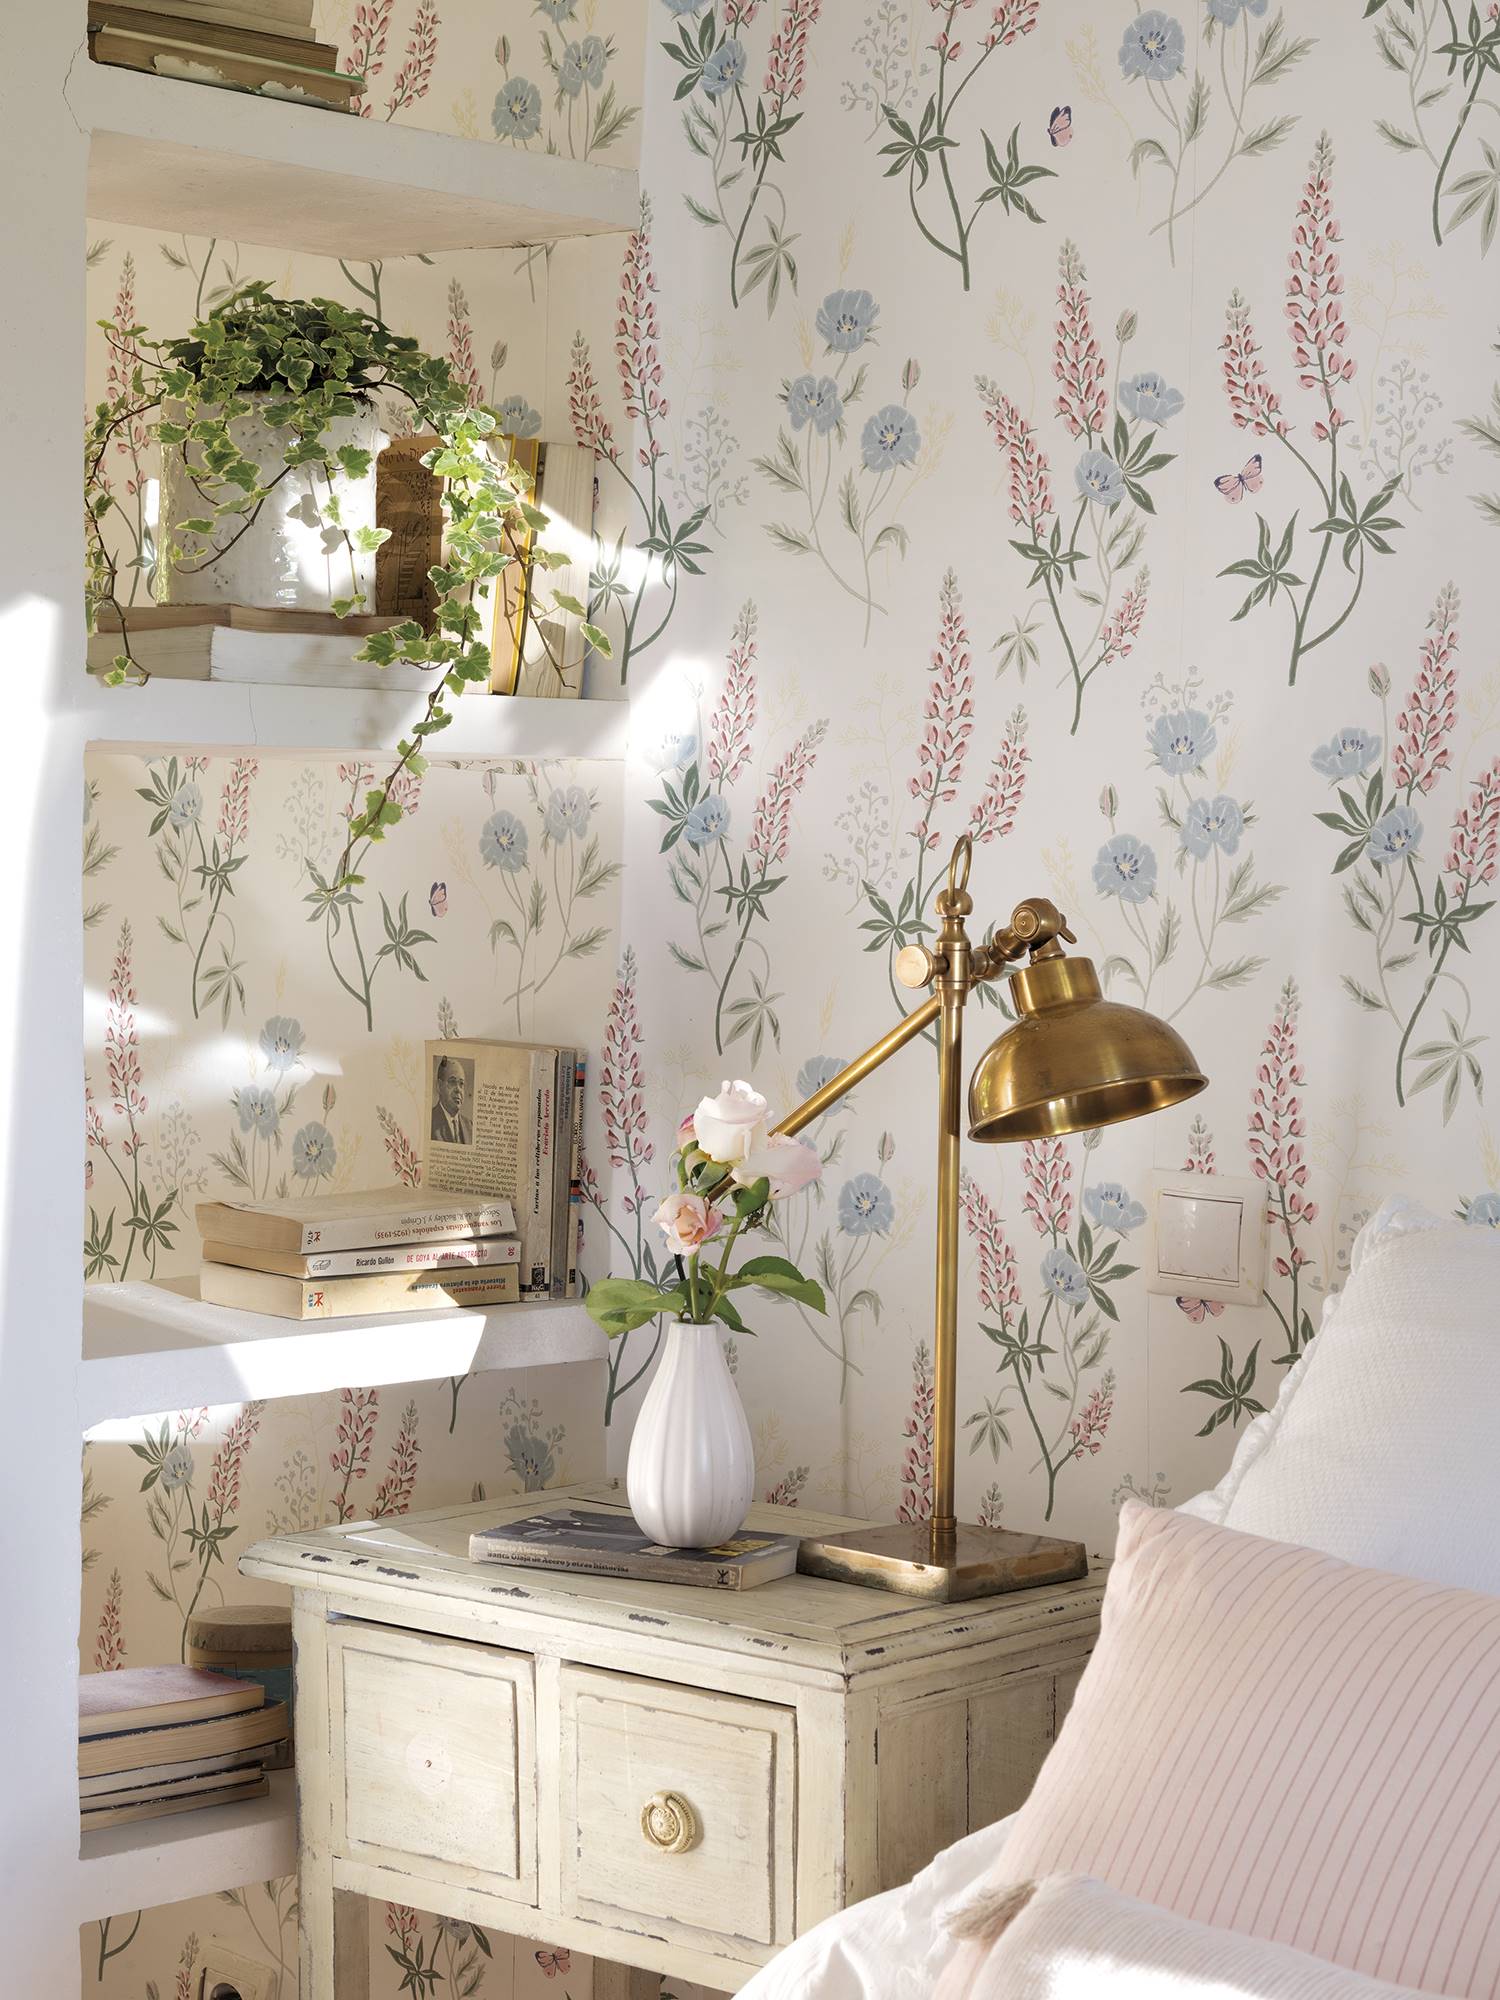 Detalles de un dormitorio en tonos rosa pastel y beige con papel pintado en la pared con motivos florales 